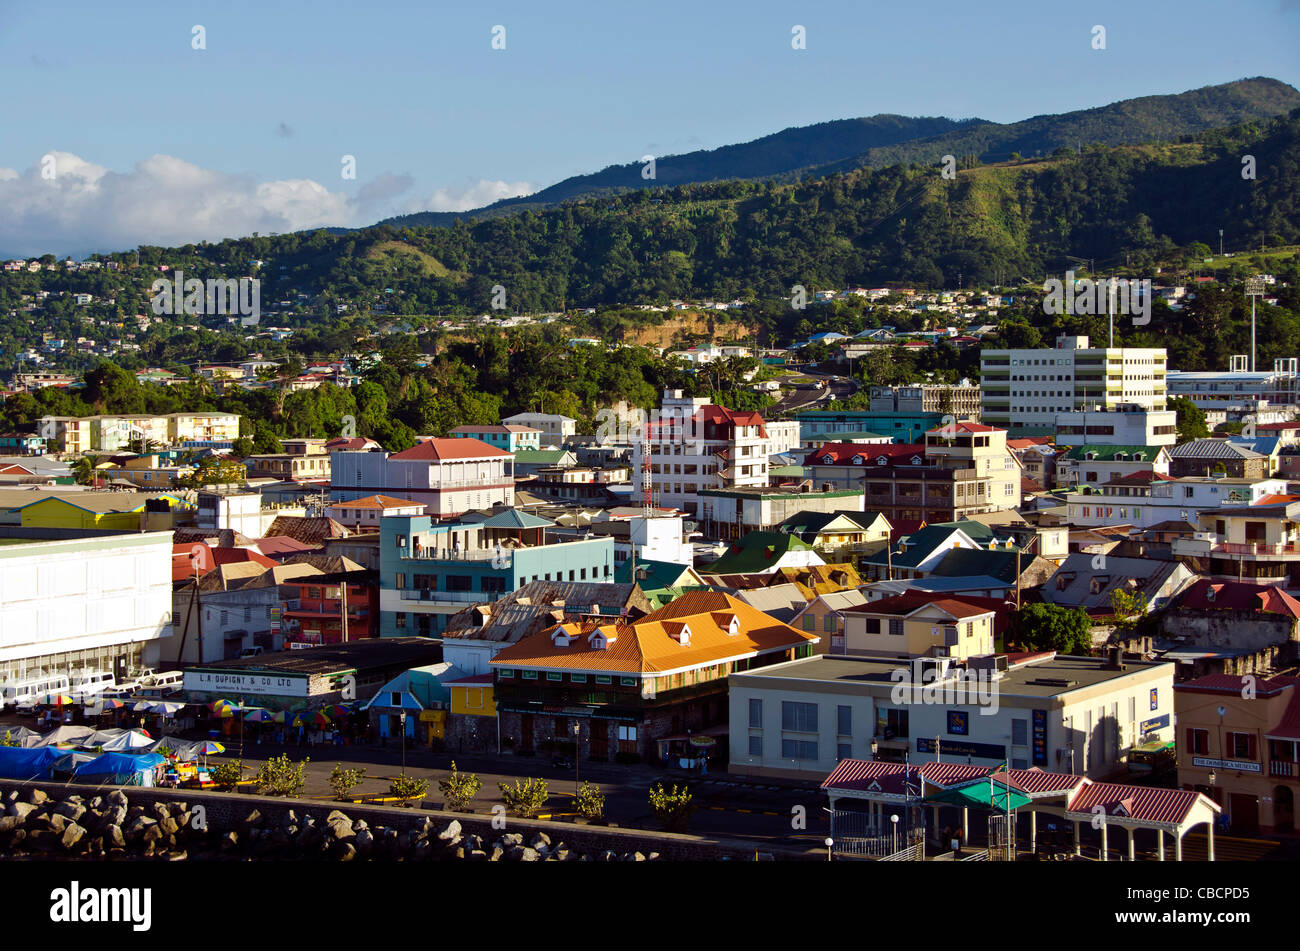 Dominique Roseau aperçu au-dessus de cette ville Eastern Caribbean Cruise Port Banque D'Images